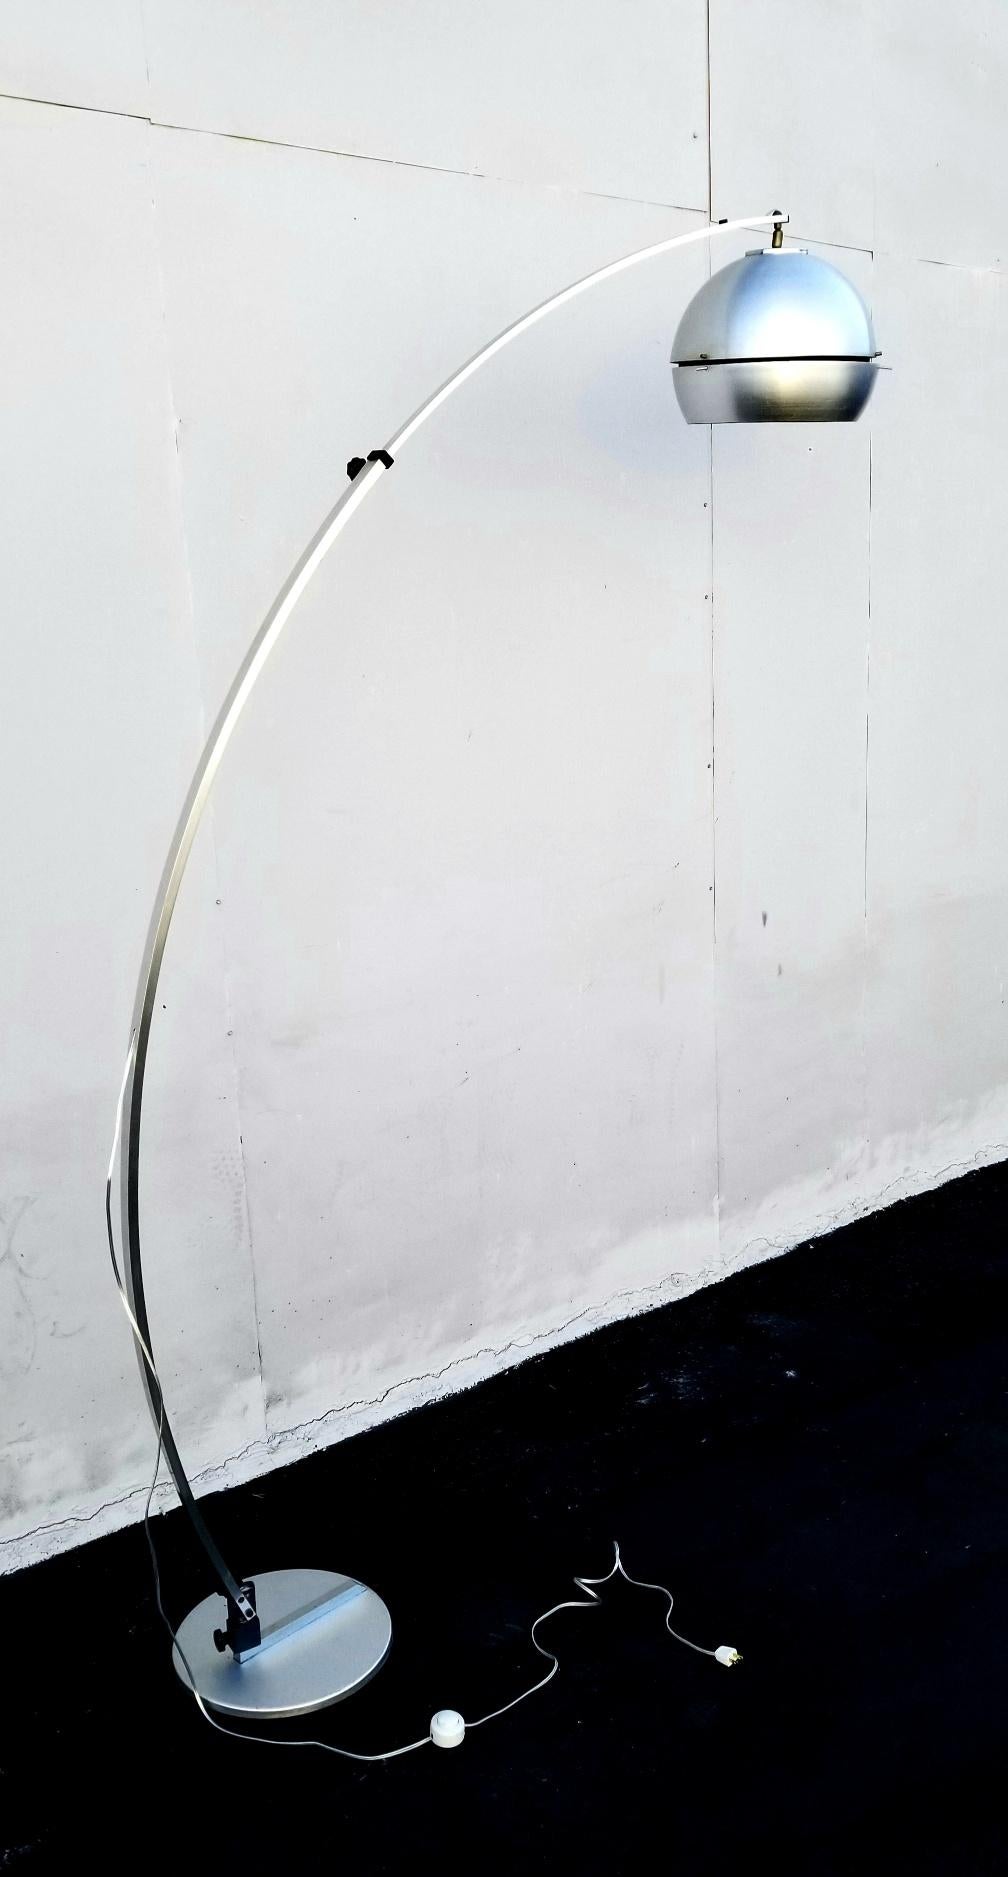 Lampe à arc italienne des années 1960 composée d'une base en métal lourd, d'un arc extensible en aluminium brossé et d'un abat-jour en métal-aluminium. Le lampadaire a une portée d'arc réglable et sur la base il y a aussi deux boutons pour enlever